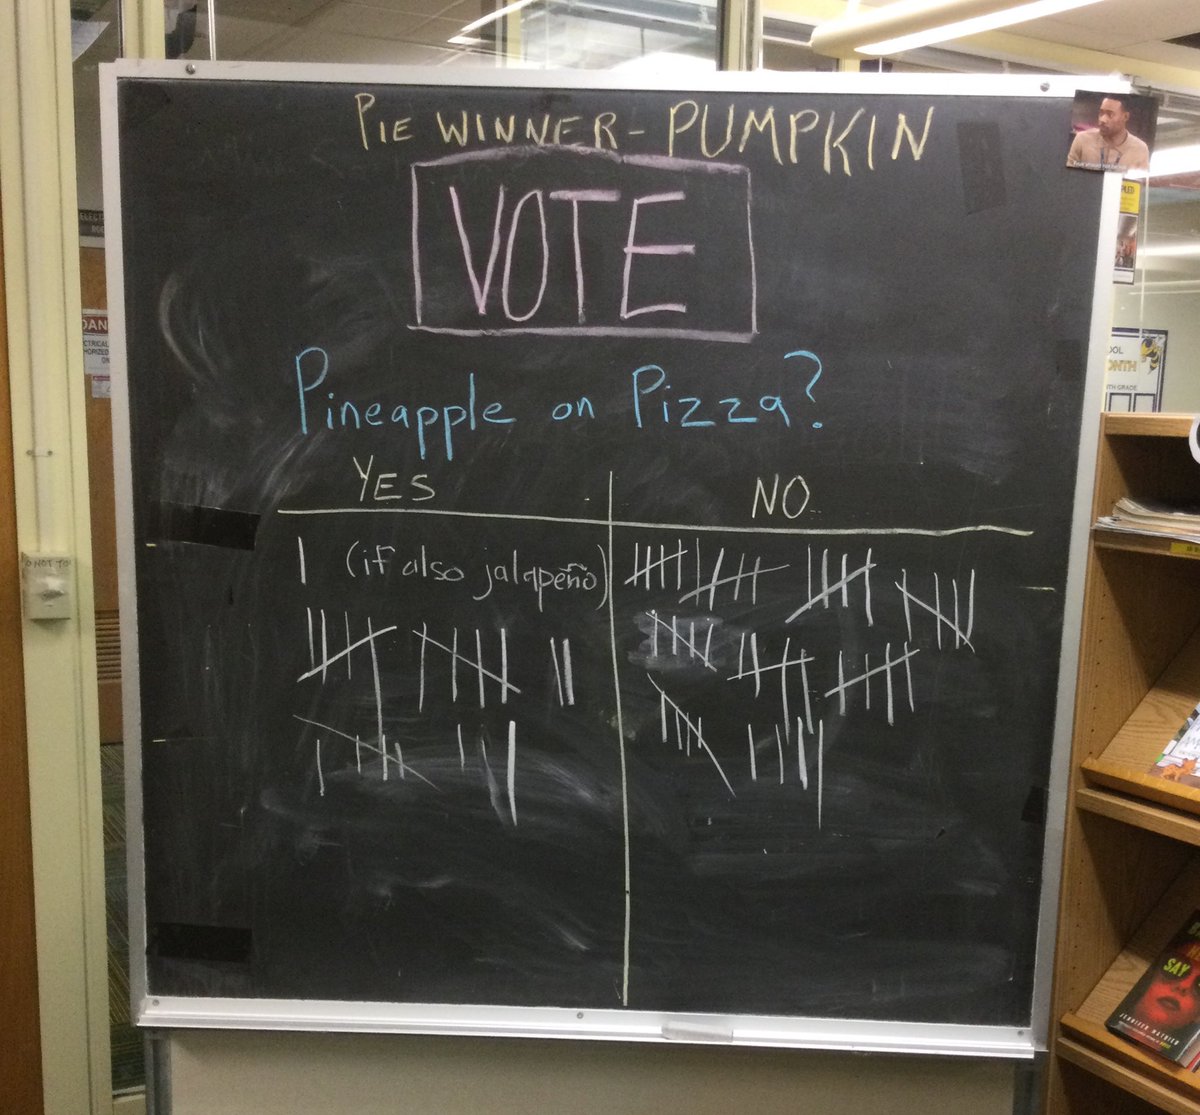 杰斐逊的学生和教职工对披萨上的菠萝有着强烈的感情。 上周的民意调查获胜者是南瓜，它是我们黄夹克最喜欢的馅饼。 @APSLibrarians @JeffersonIBMYP https://t.co/IKkWDI8ZzK